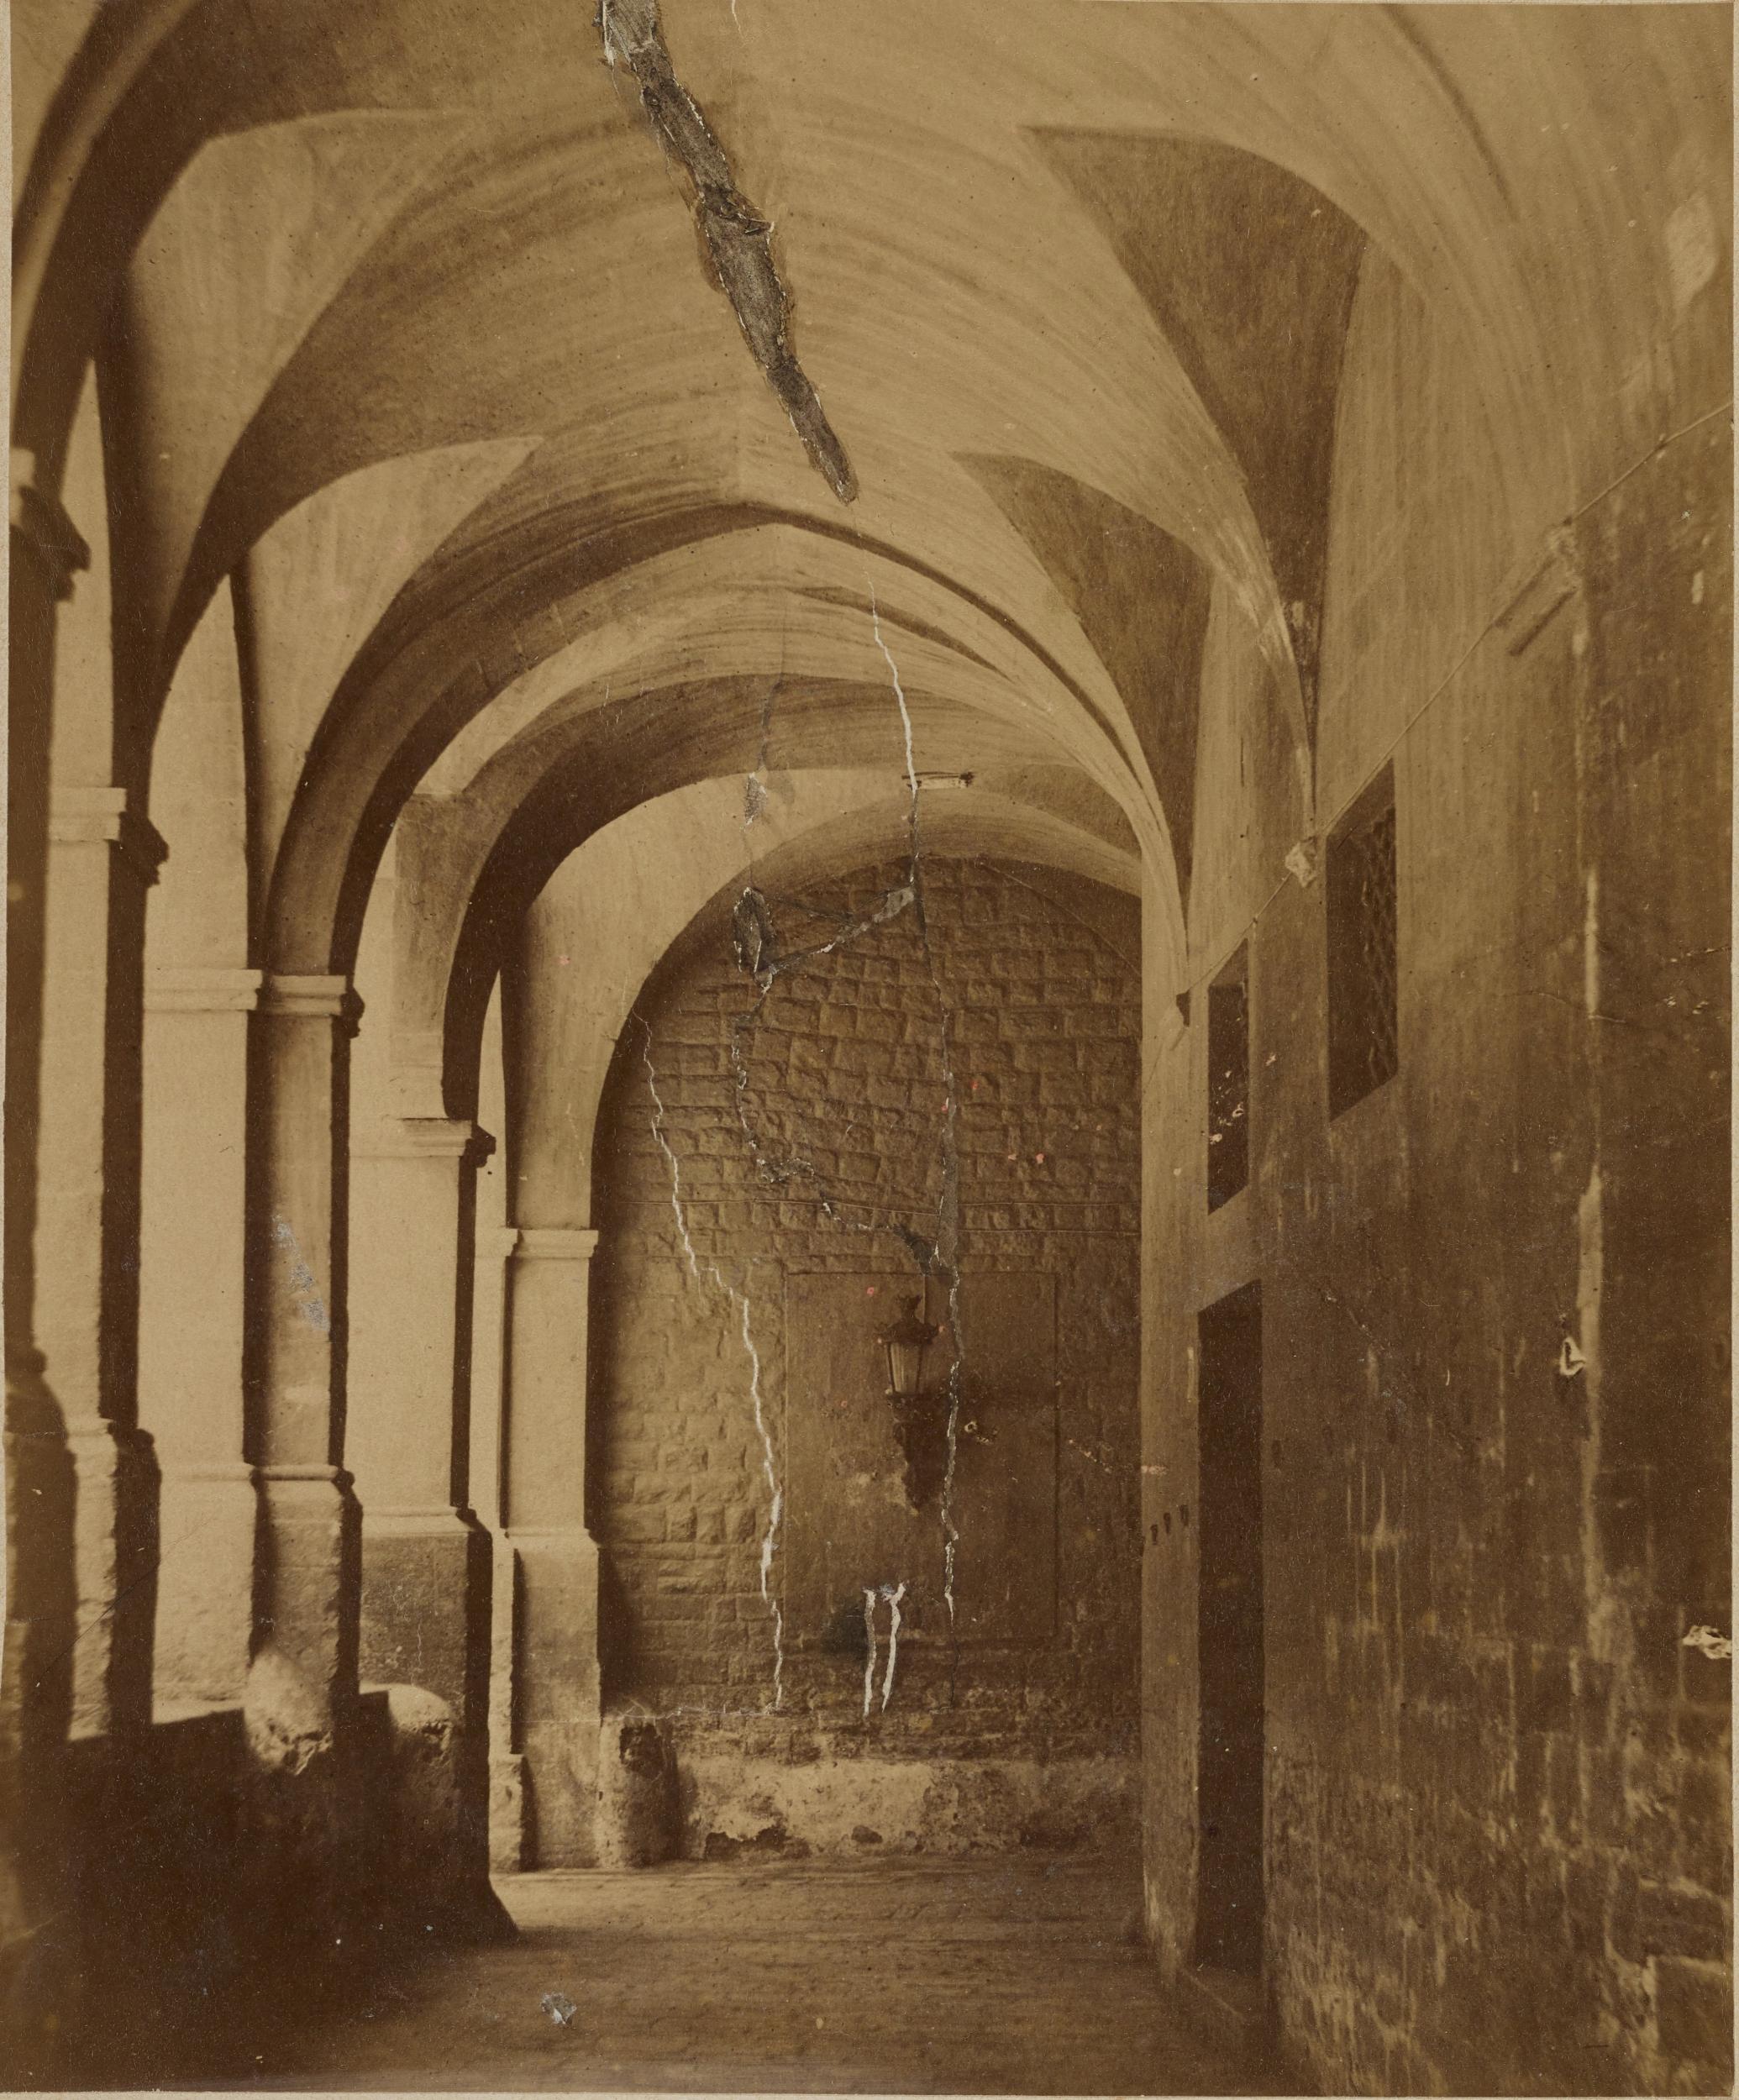 Fotografo non identificato, Barletta - Palazzo Bonelli - Portico, 1880 ca., albumina/carta, 15,8x19,2 cm, MPI312829